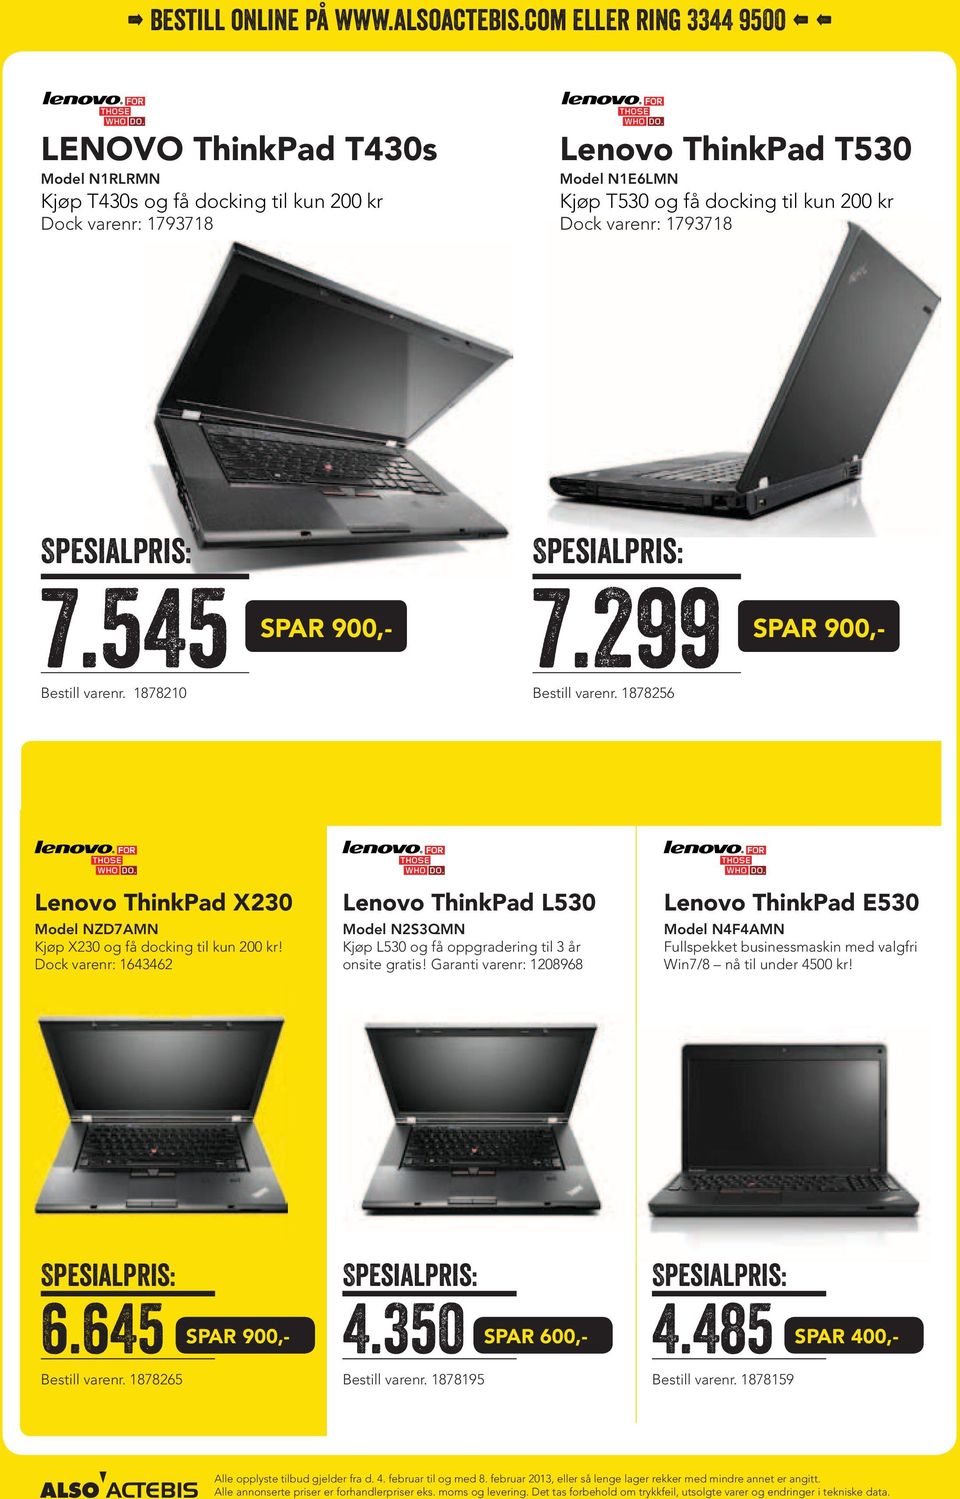 Dock varenr: 1643462 Lenovo ThinkPad L530 Model N2S3QMN Kjøp L530 og få oppgradering til 3 år onsite gratis!